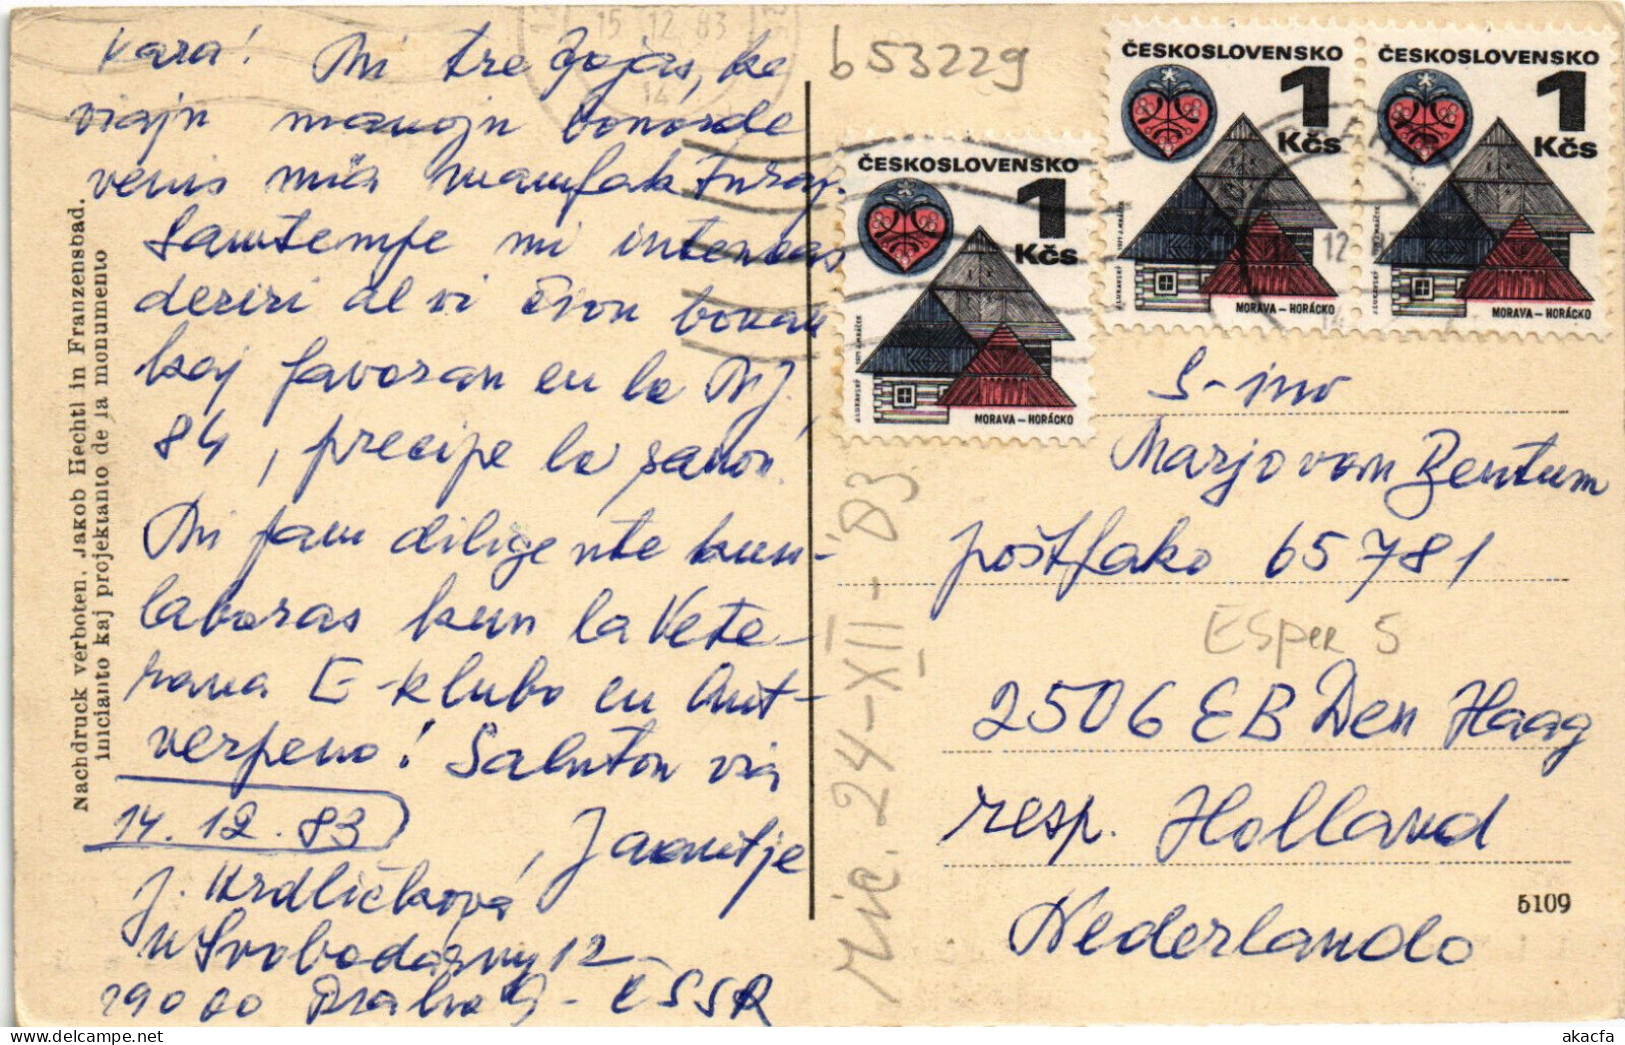 PC ESPERANTO, L L ZAMENHOF AUTORO DE ESPERANTO, Vintage Postcard (b53229) - Esperanto